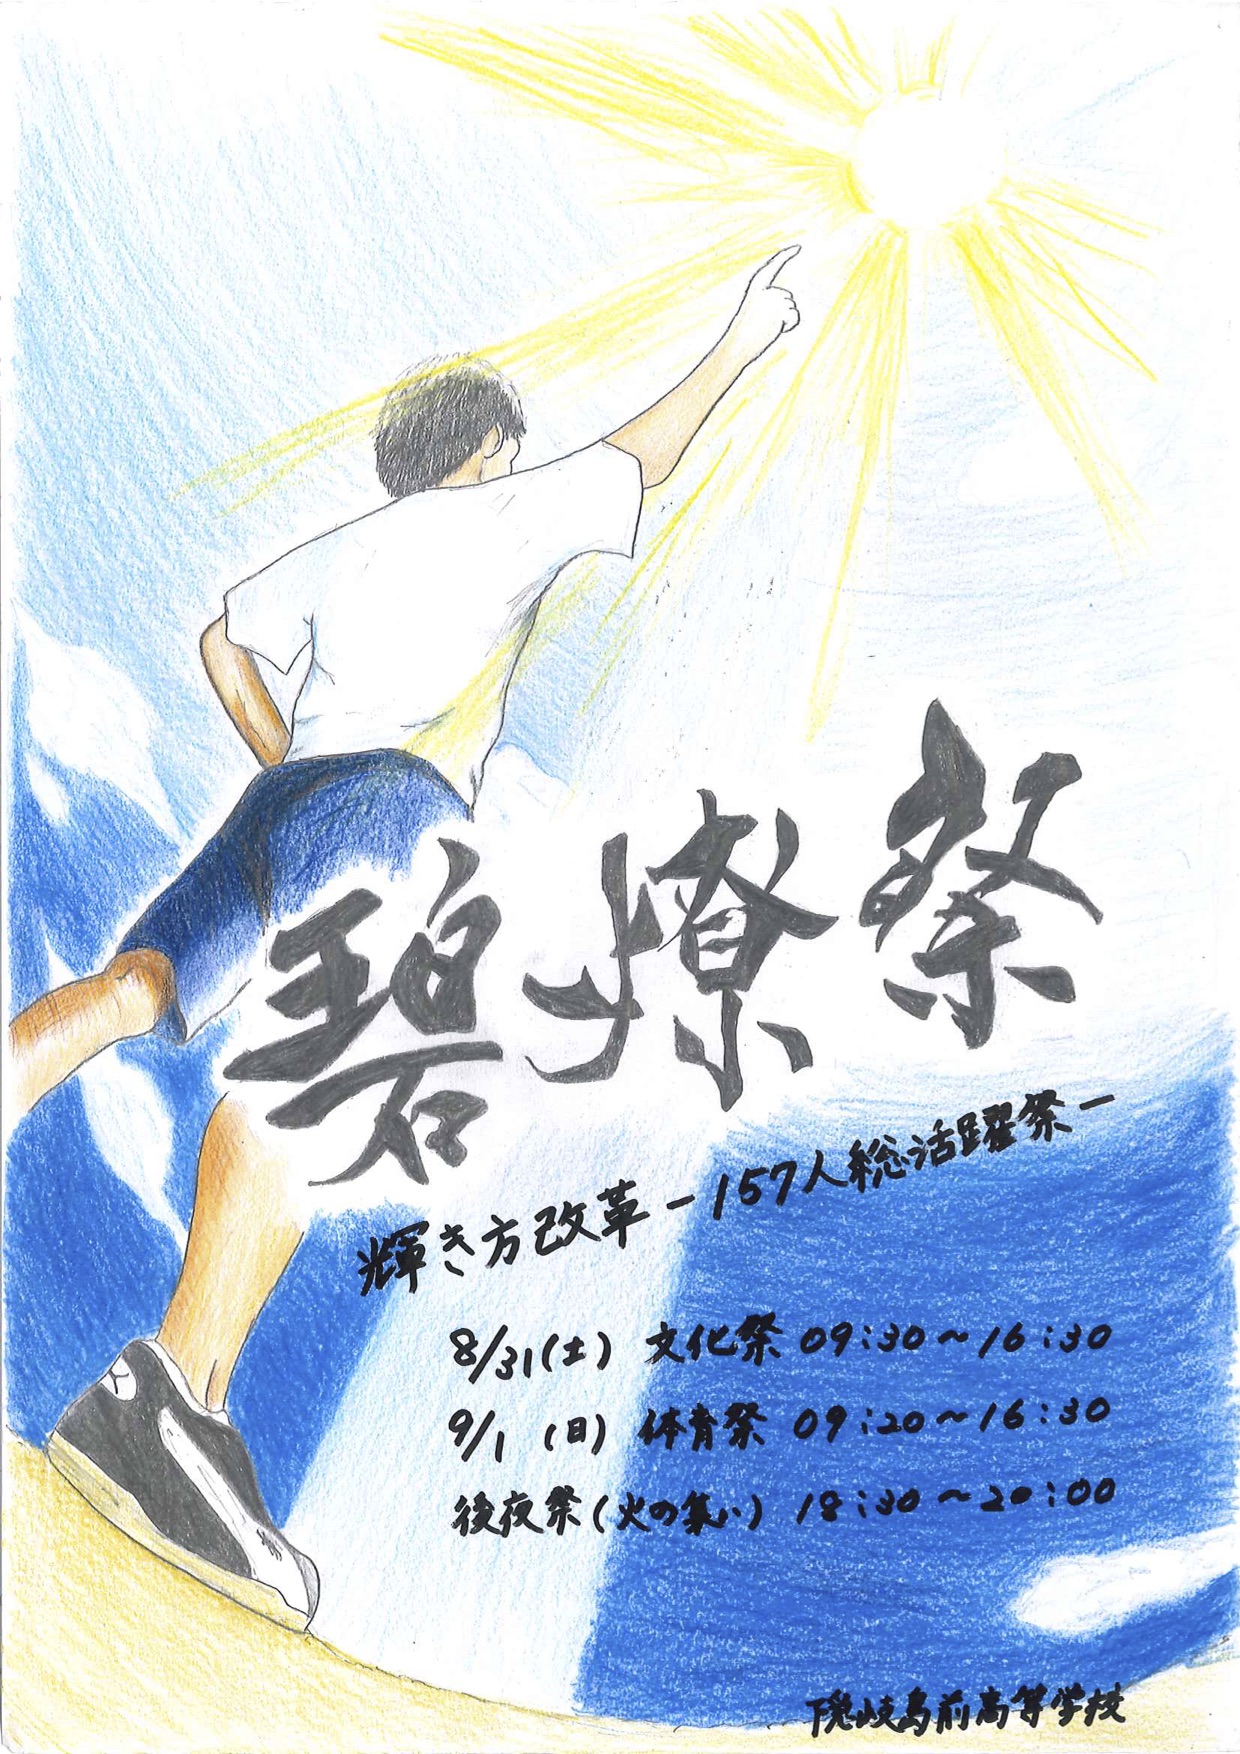 本校学園祭 碧燎祭 が開催されます 島根県立隠岐島前高等学校